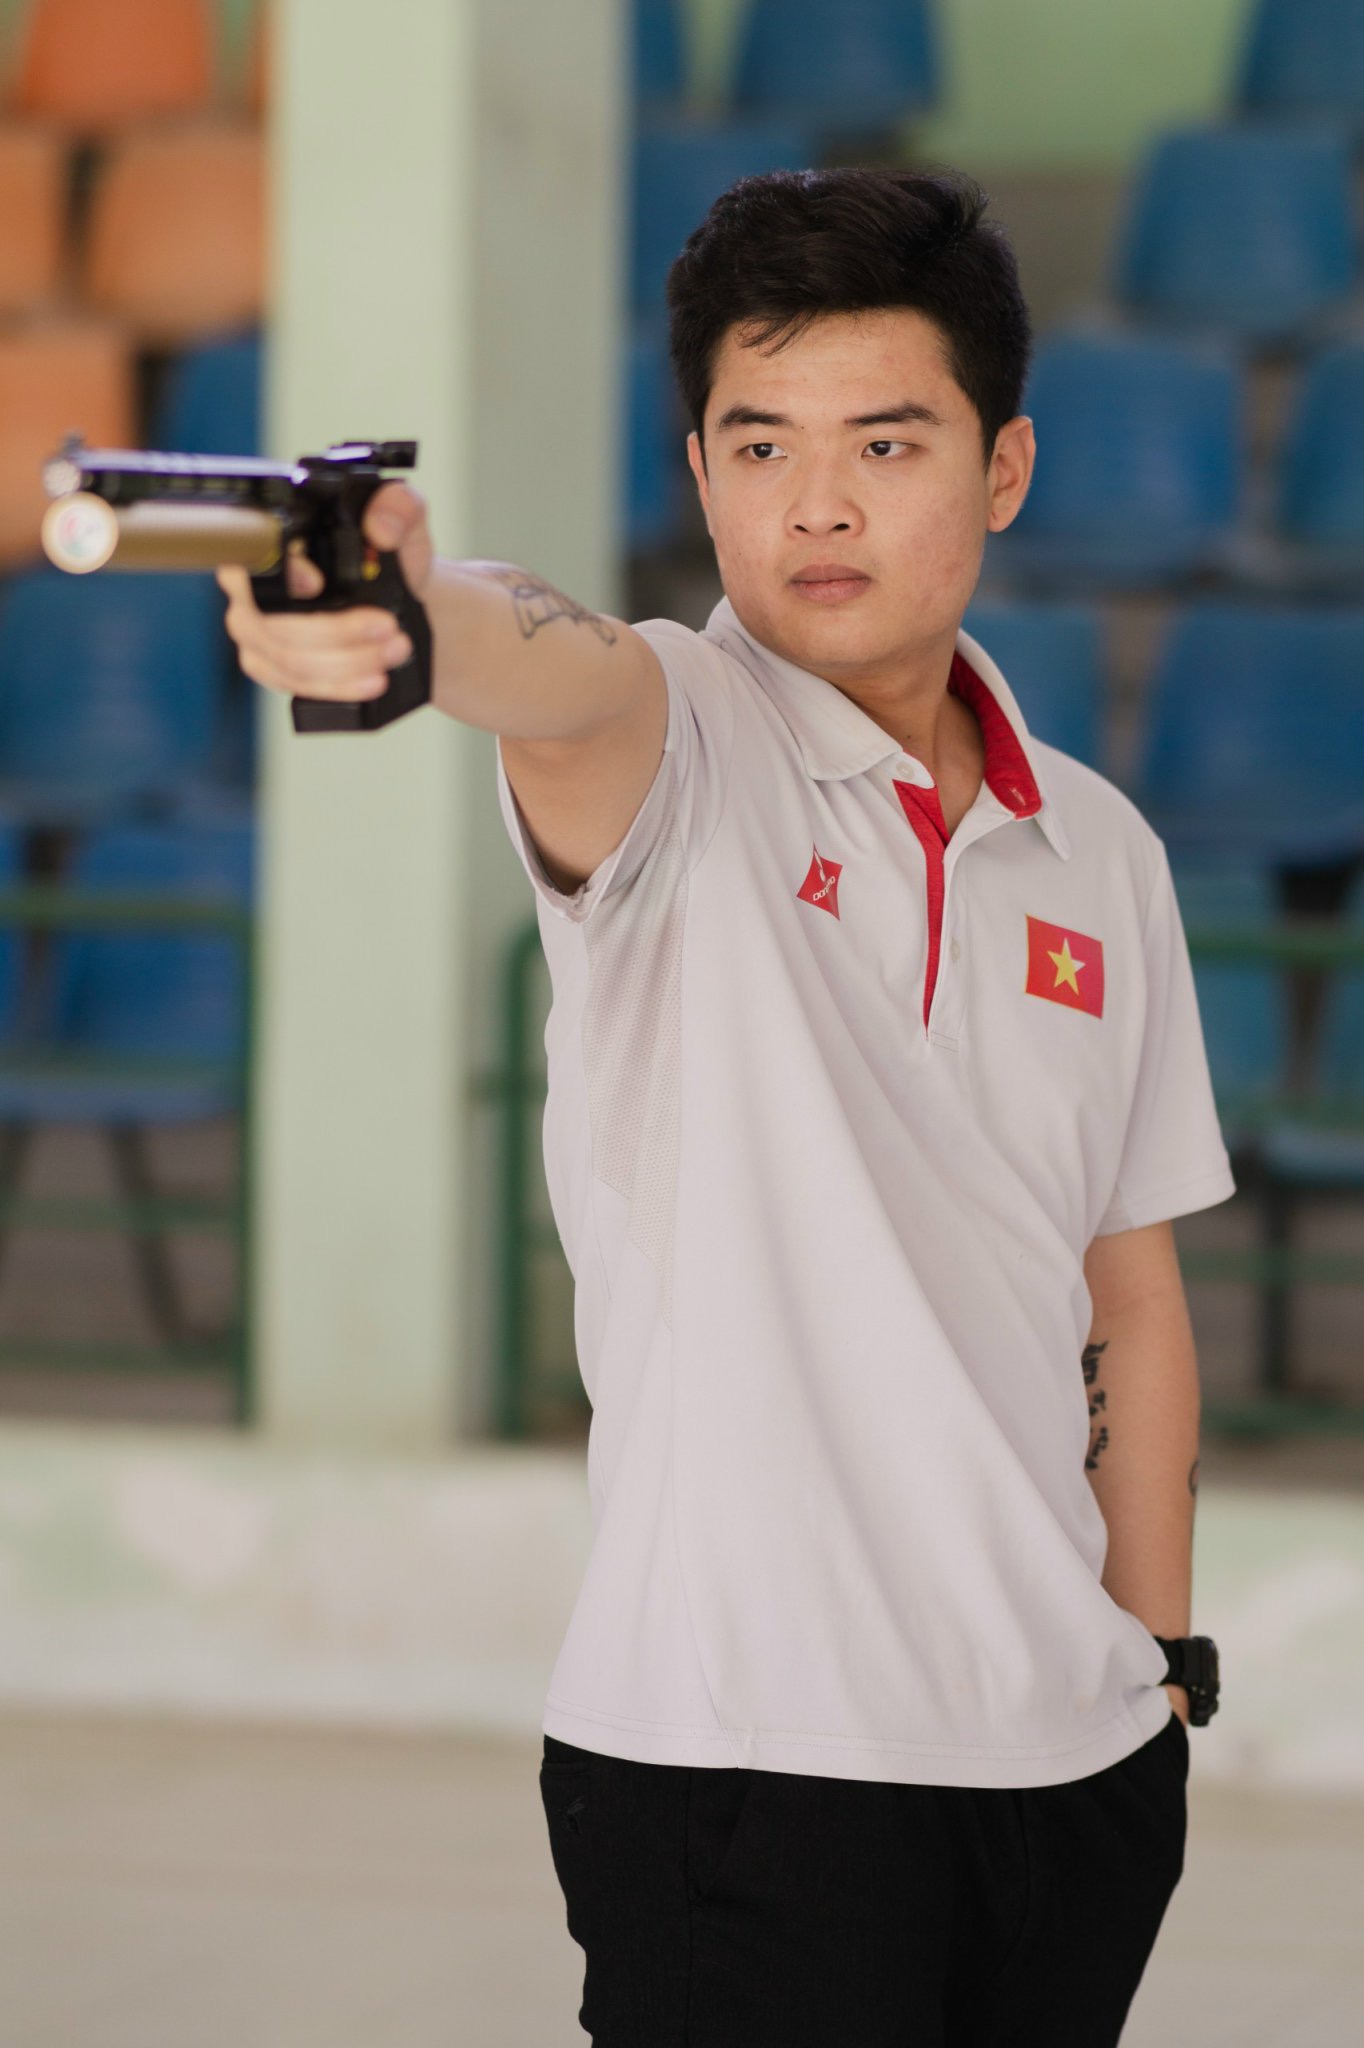 ASIAD 19: Quang Huy và khẩu súng làm thay đổi cuộc đời - Ảnh 6.